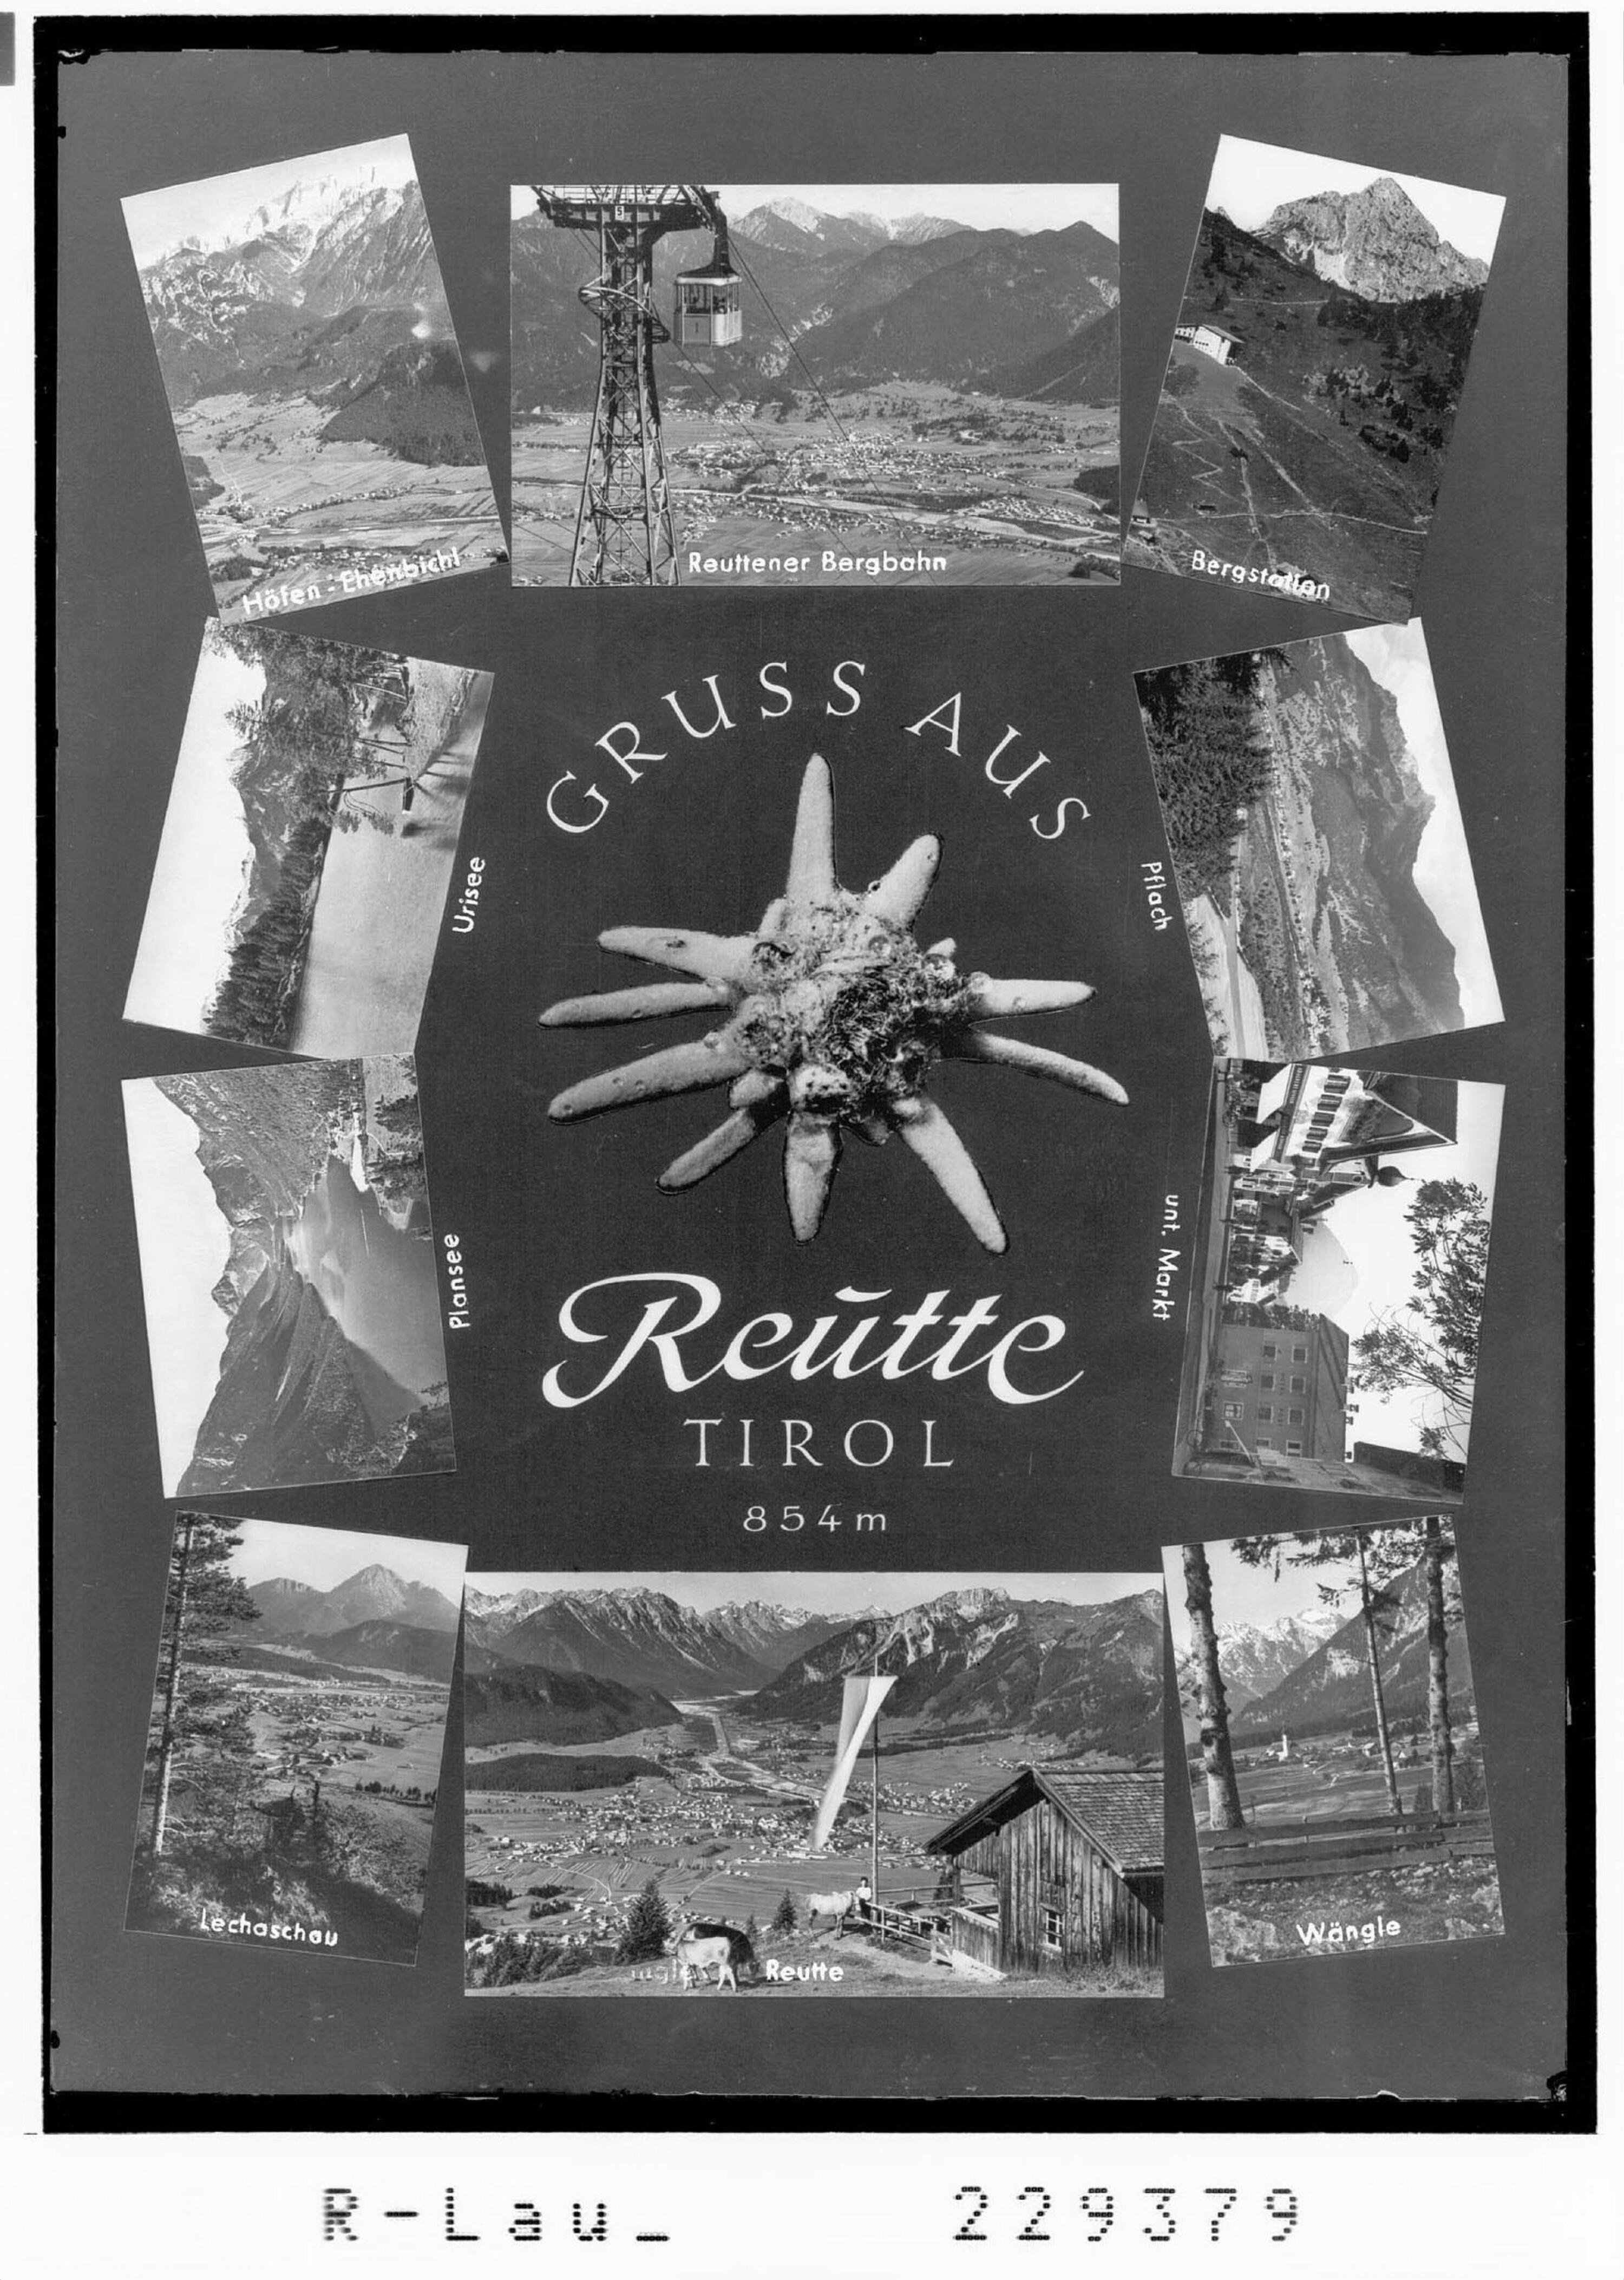 Gruss aus Reutte in Tirol 854 m></div>


    <hr>
    <div class=